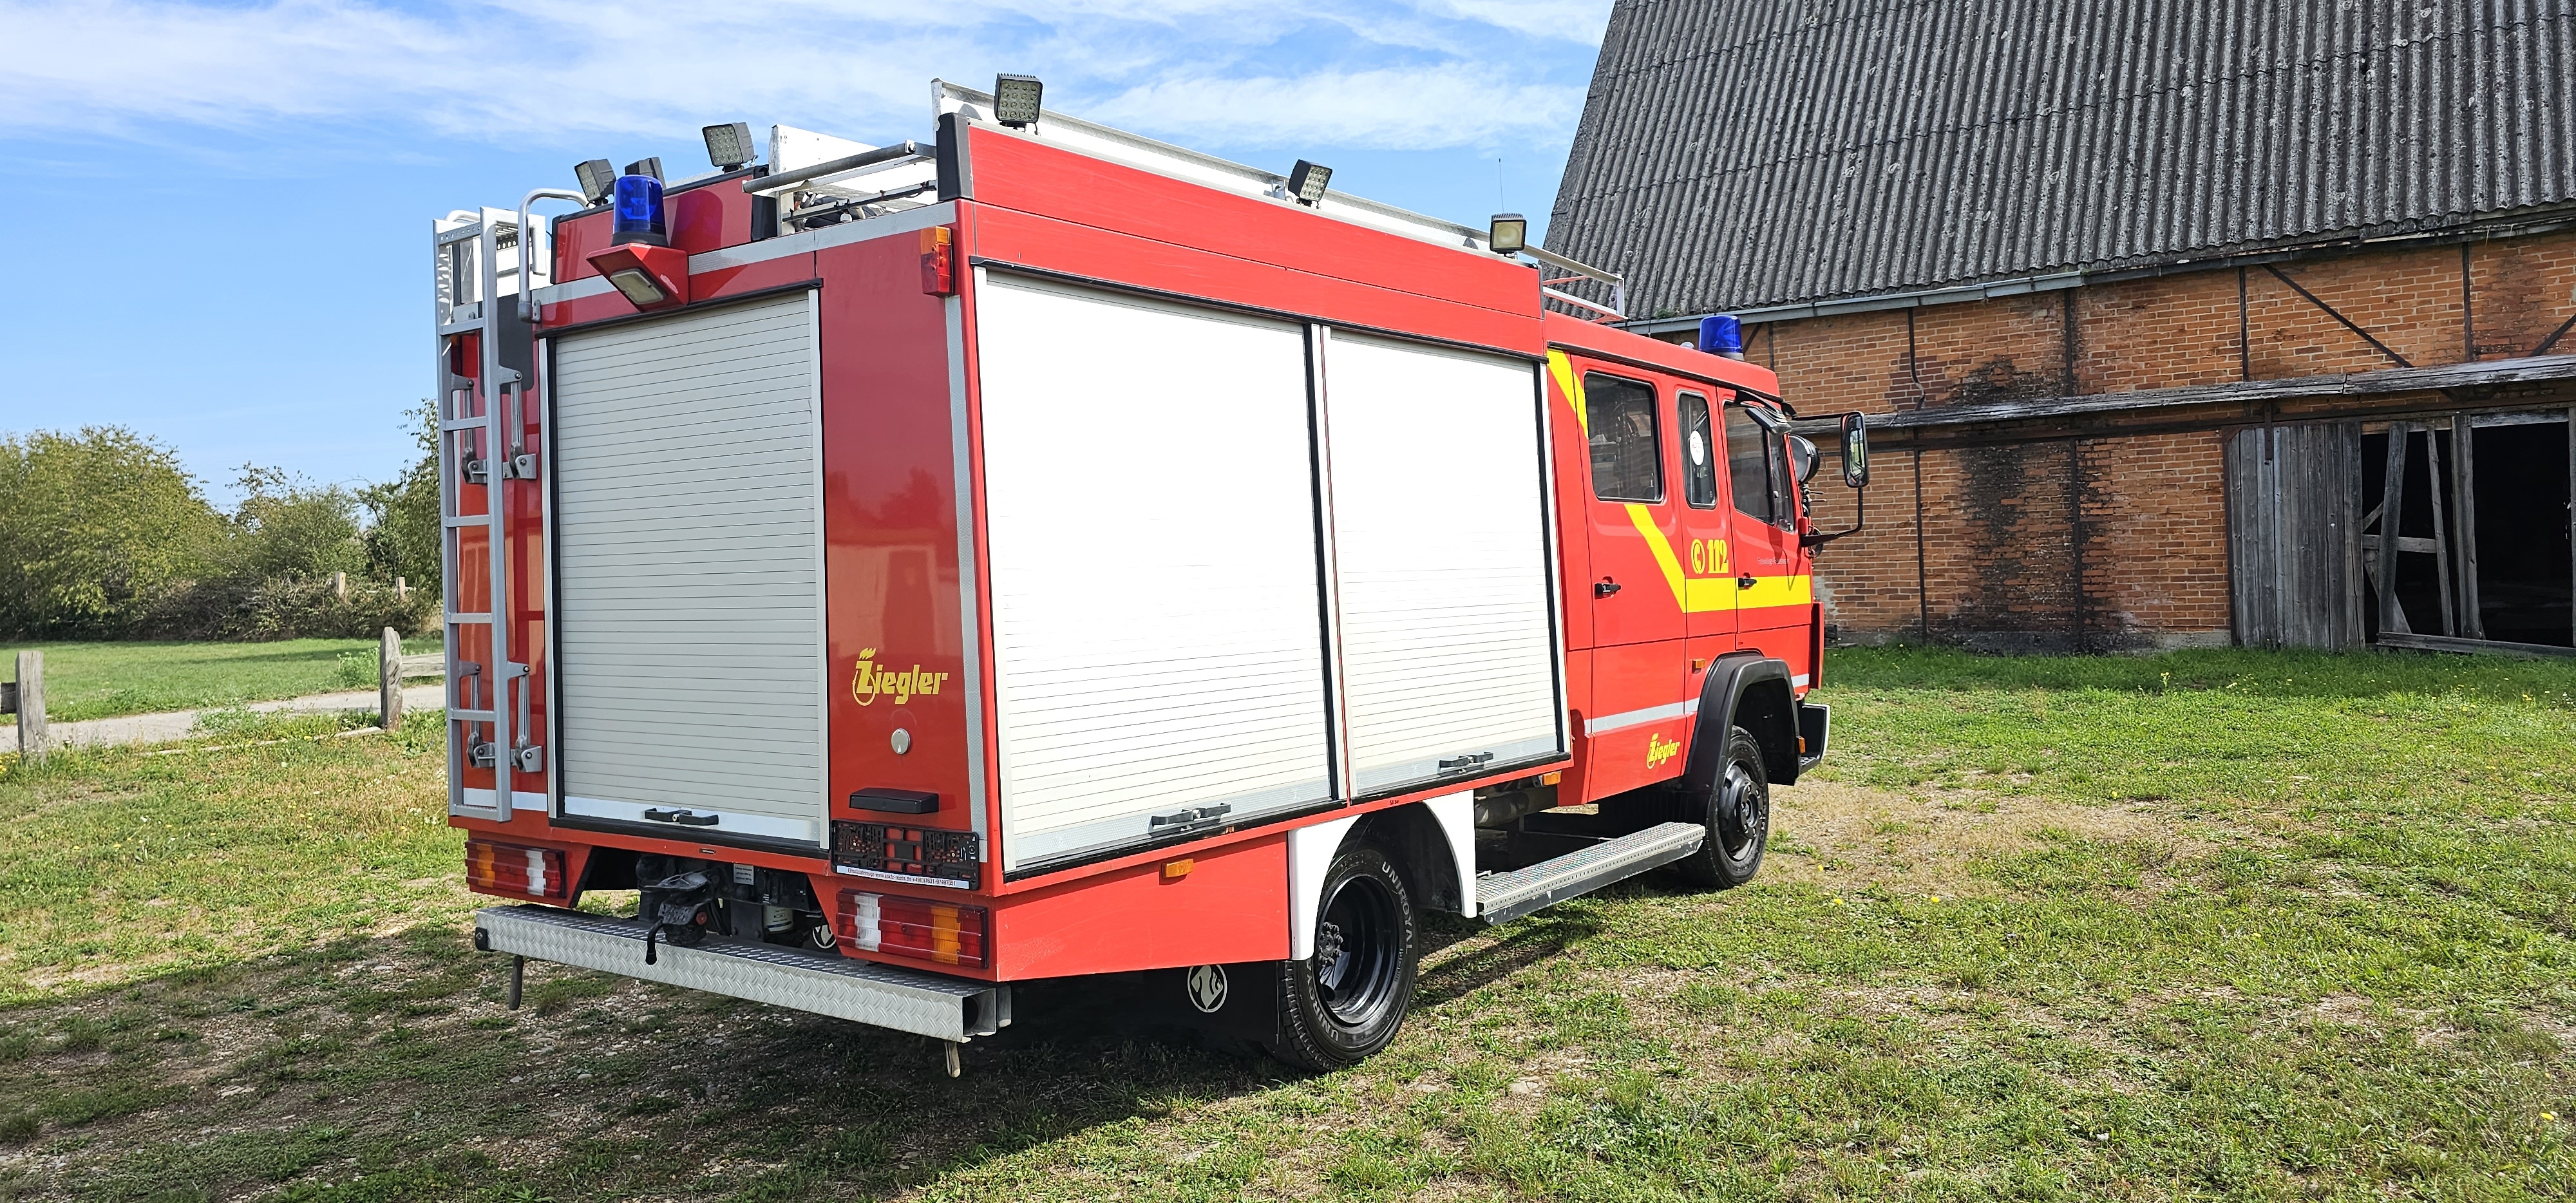 GTSM-O Zubehör zu Feuerwehr-Lösch-Fahrzeug